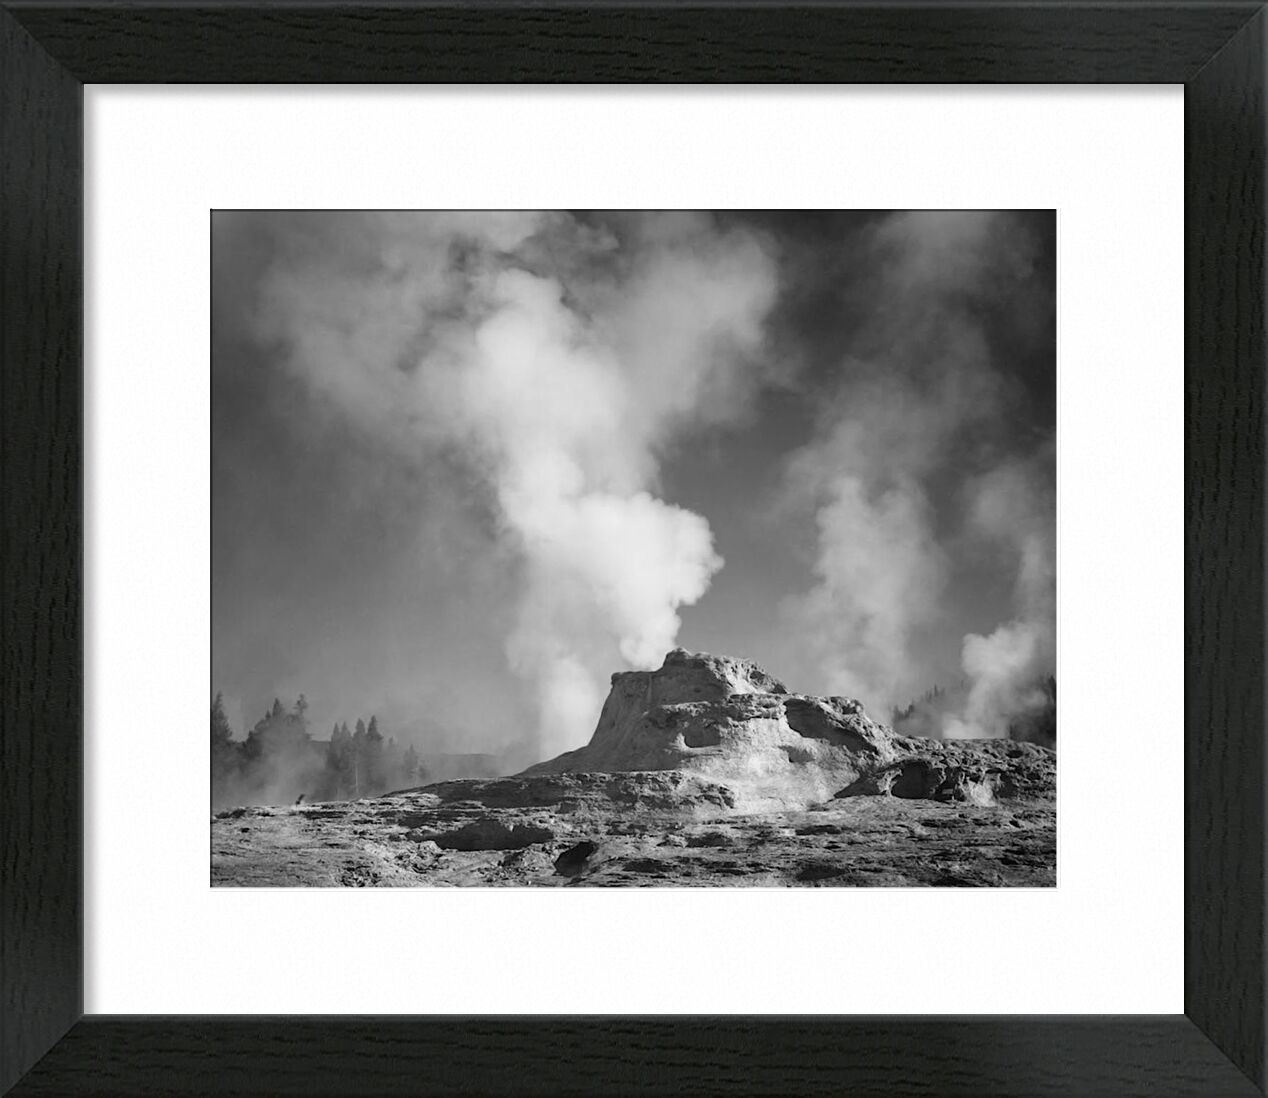 Castle Geyser Cove, Yellowstone - Ansel Adams von Bildende Kunst, Prodi Art, ANSEL ADAMS, Yellowstone, Vulkan, Geysir